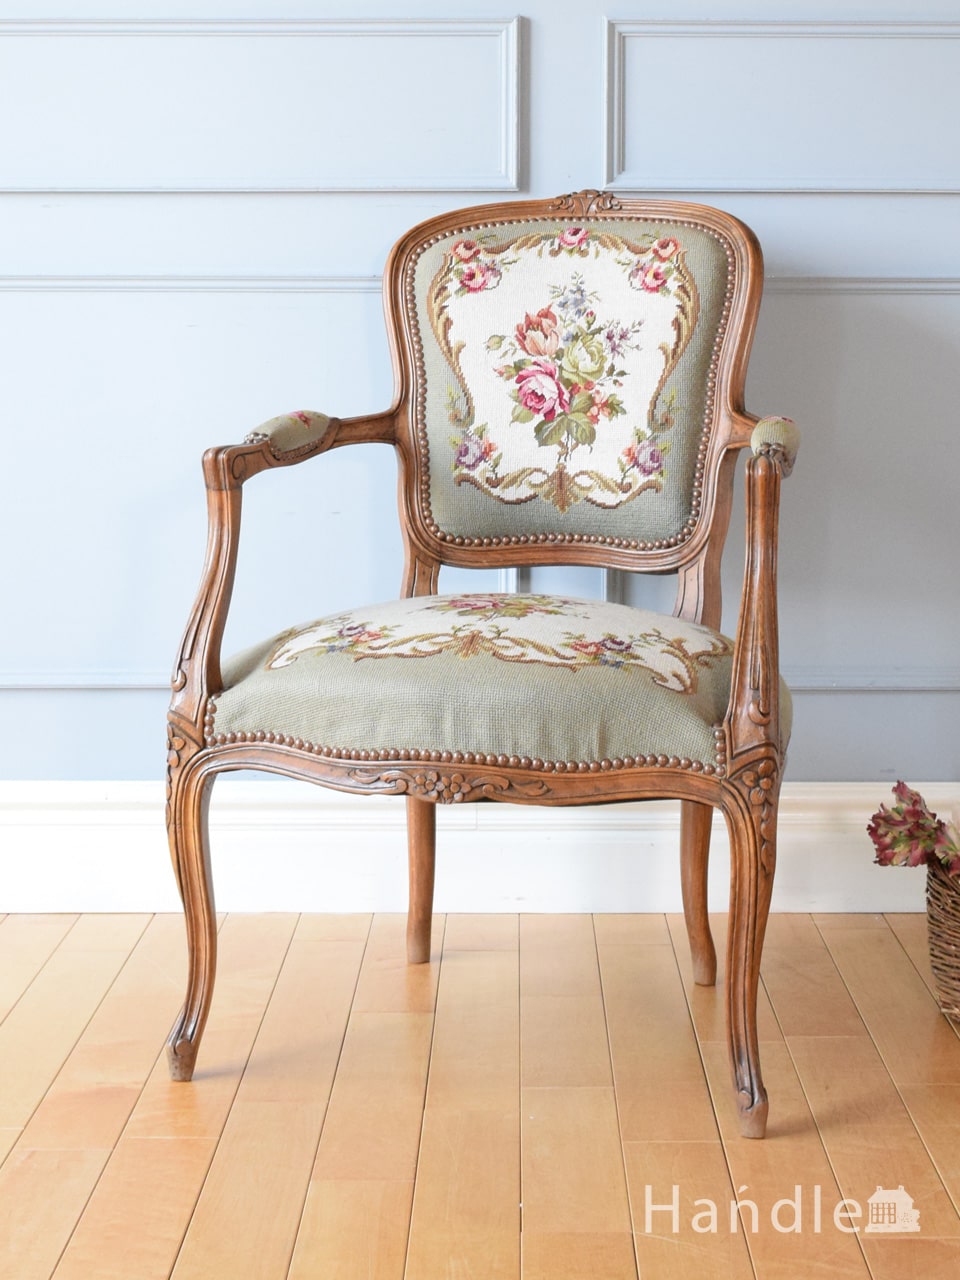 フランスから届いた一人掛けの椅子、王子様の刺繍が美しいプチポワンの 